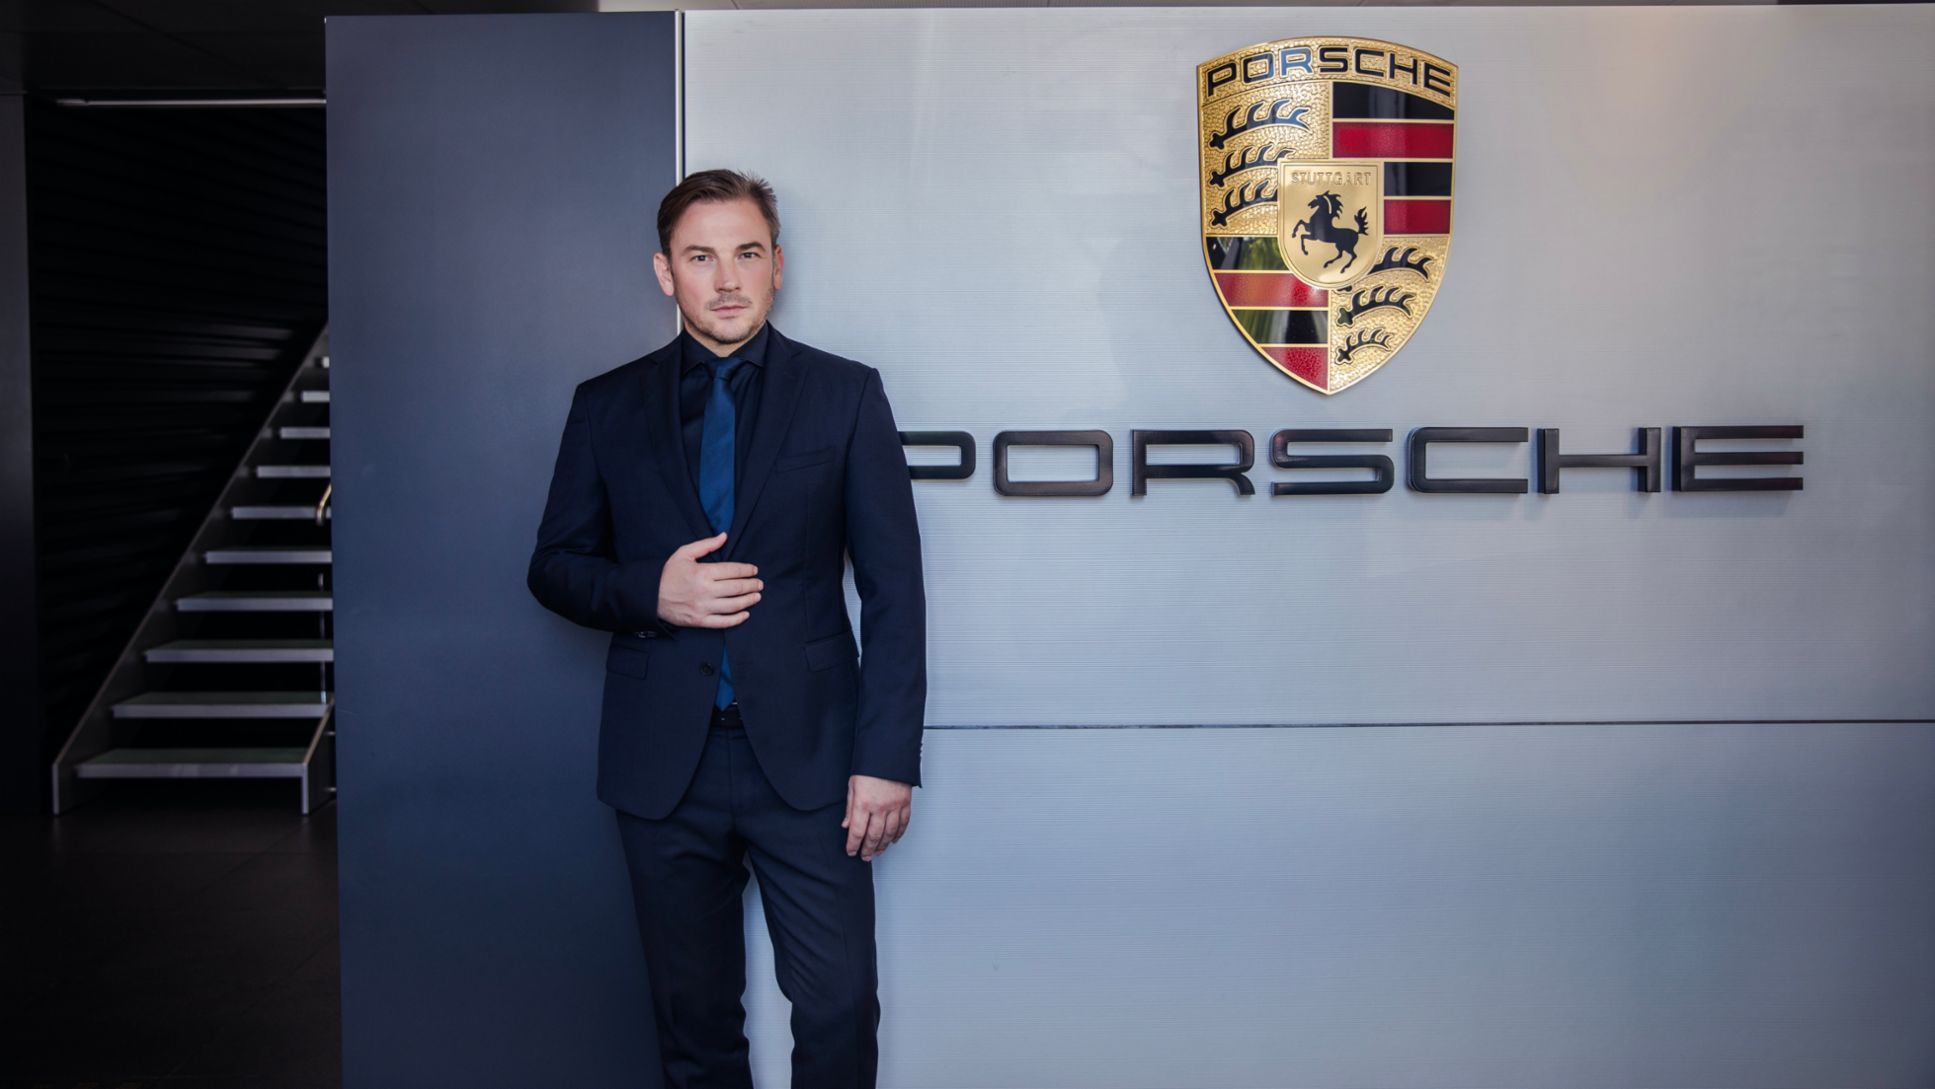 Manolito Vujicic, Head of Porsche Division India, 2020, Porsche AG